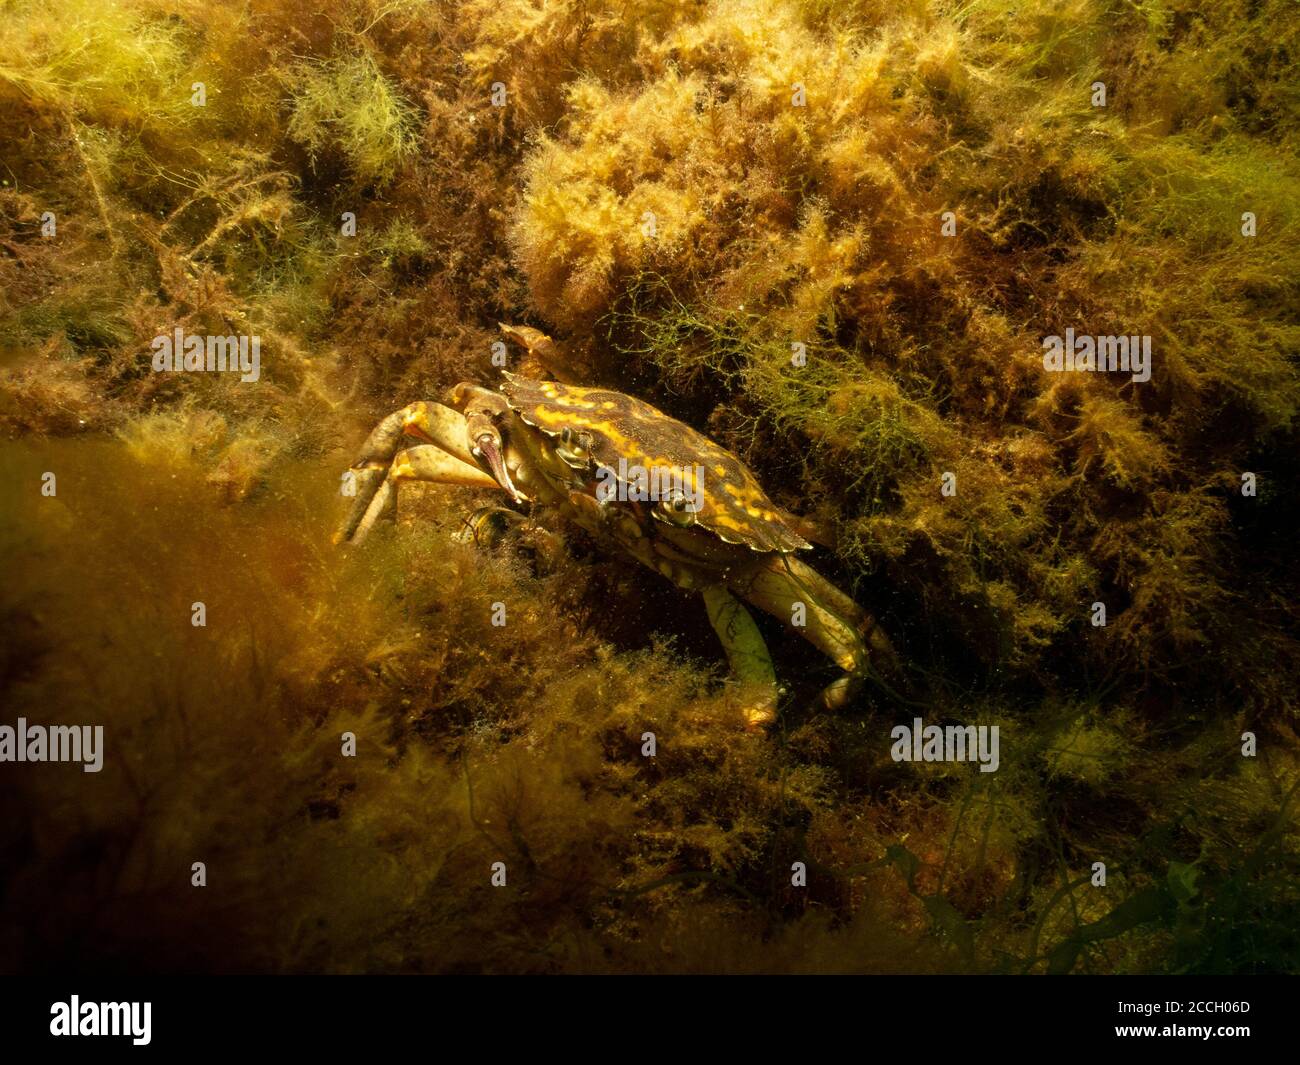 Ein Nahaufnahme Bild einer Krabbe unter Wasser. Bild aus Oresund, Malmö in Südschweden. Stockfoto